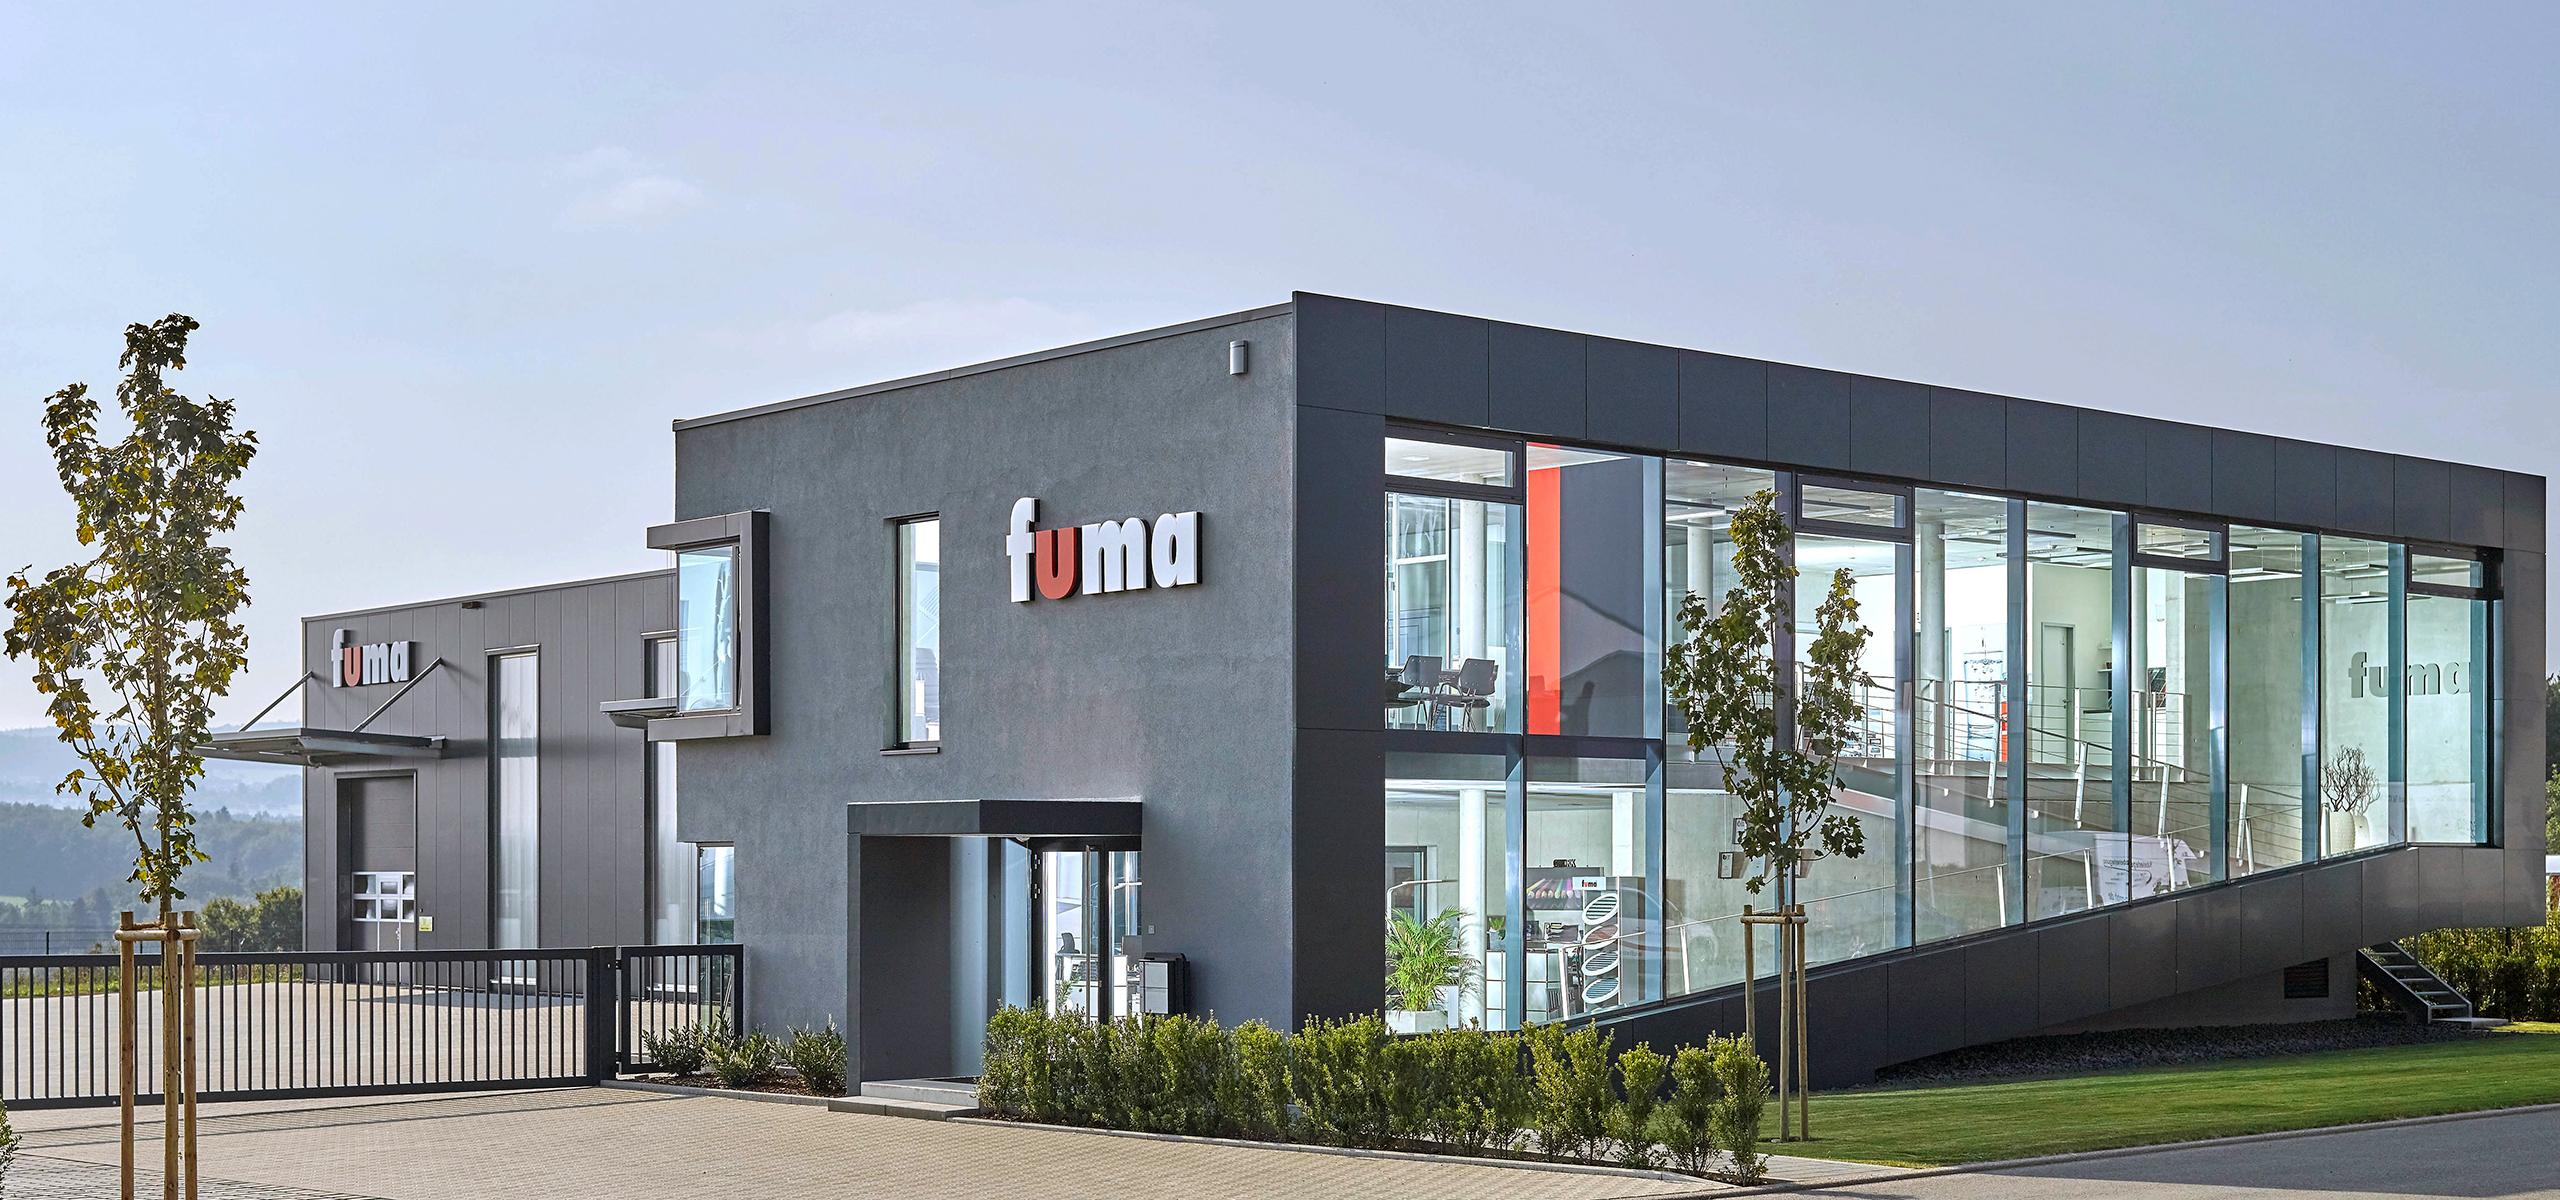 fuma Hauszubehör GmbH – Familienunternehmen in zweiter Generation